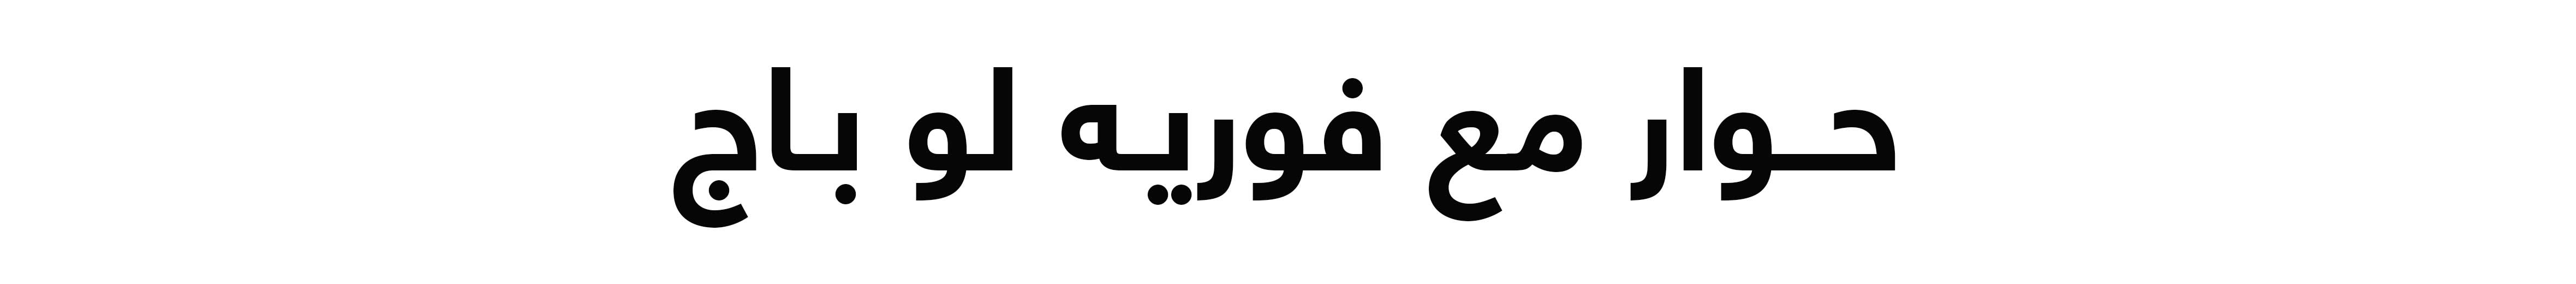 Arabic Lockup - Web title